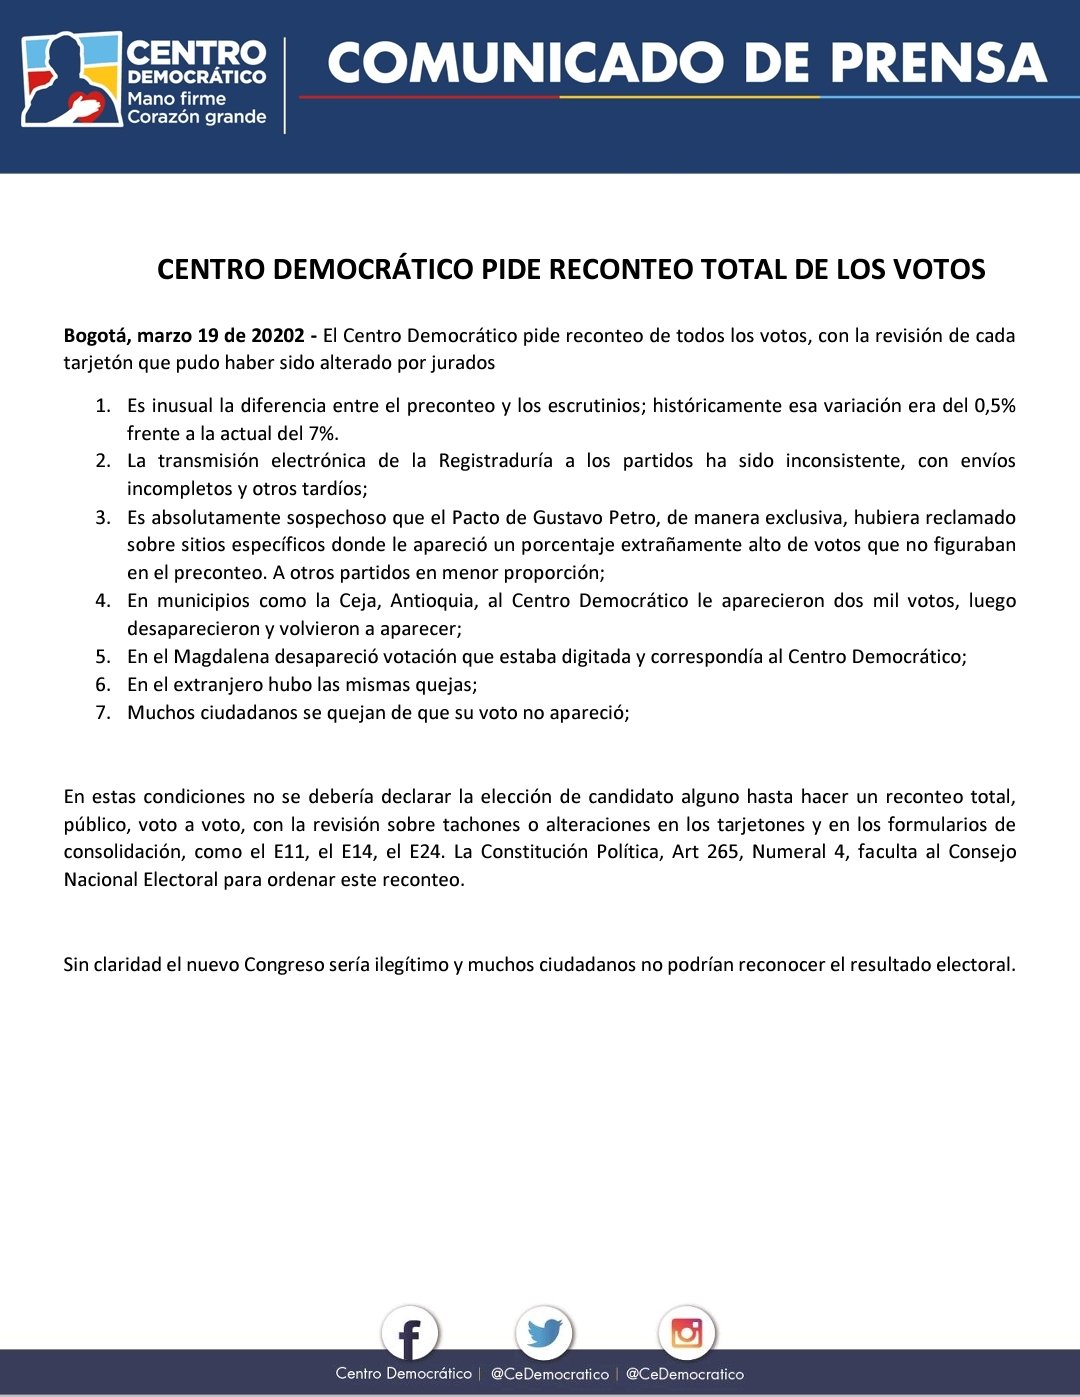 Comunicado de prensa petición reconteo total de votos Centro Democrático/ Foto: @CeDemocratico